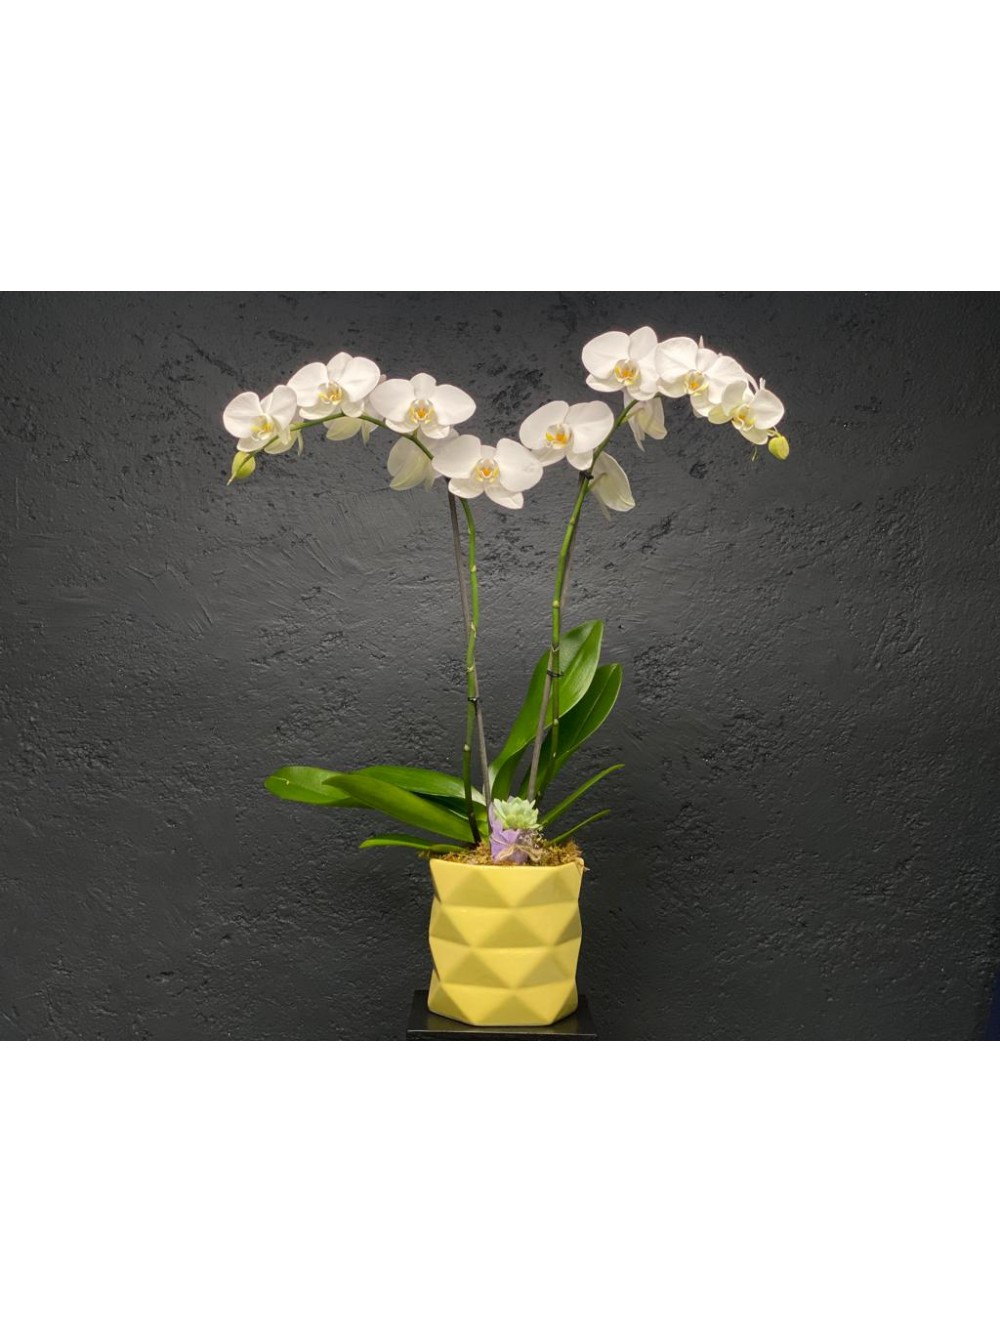 Orquídea blanca de dos varas